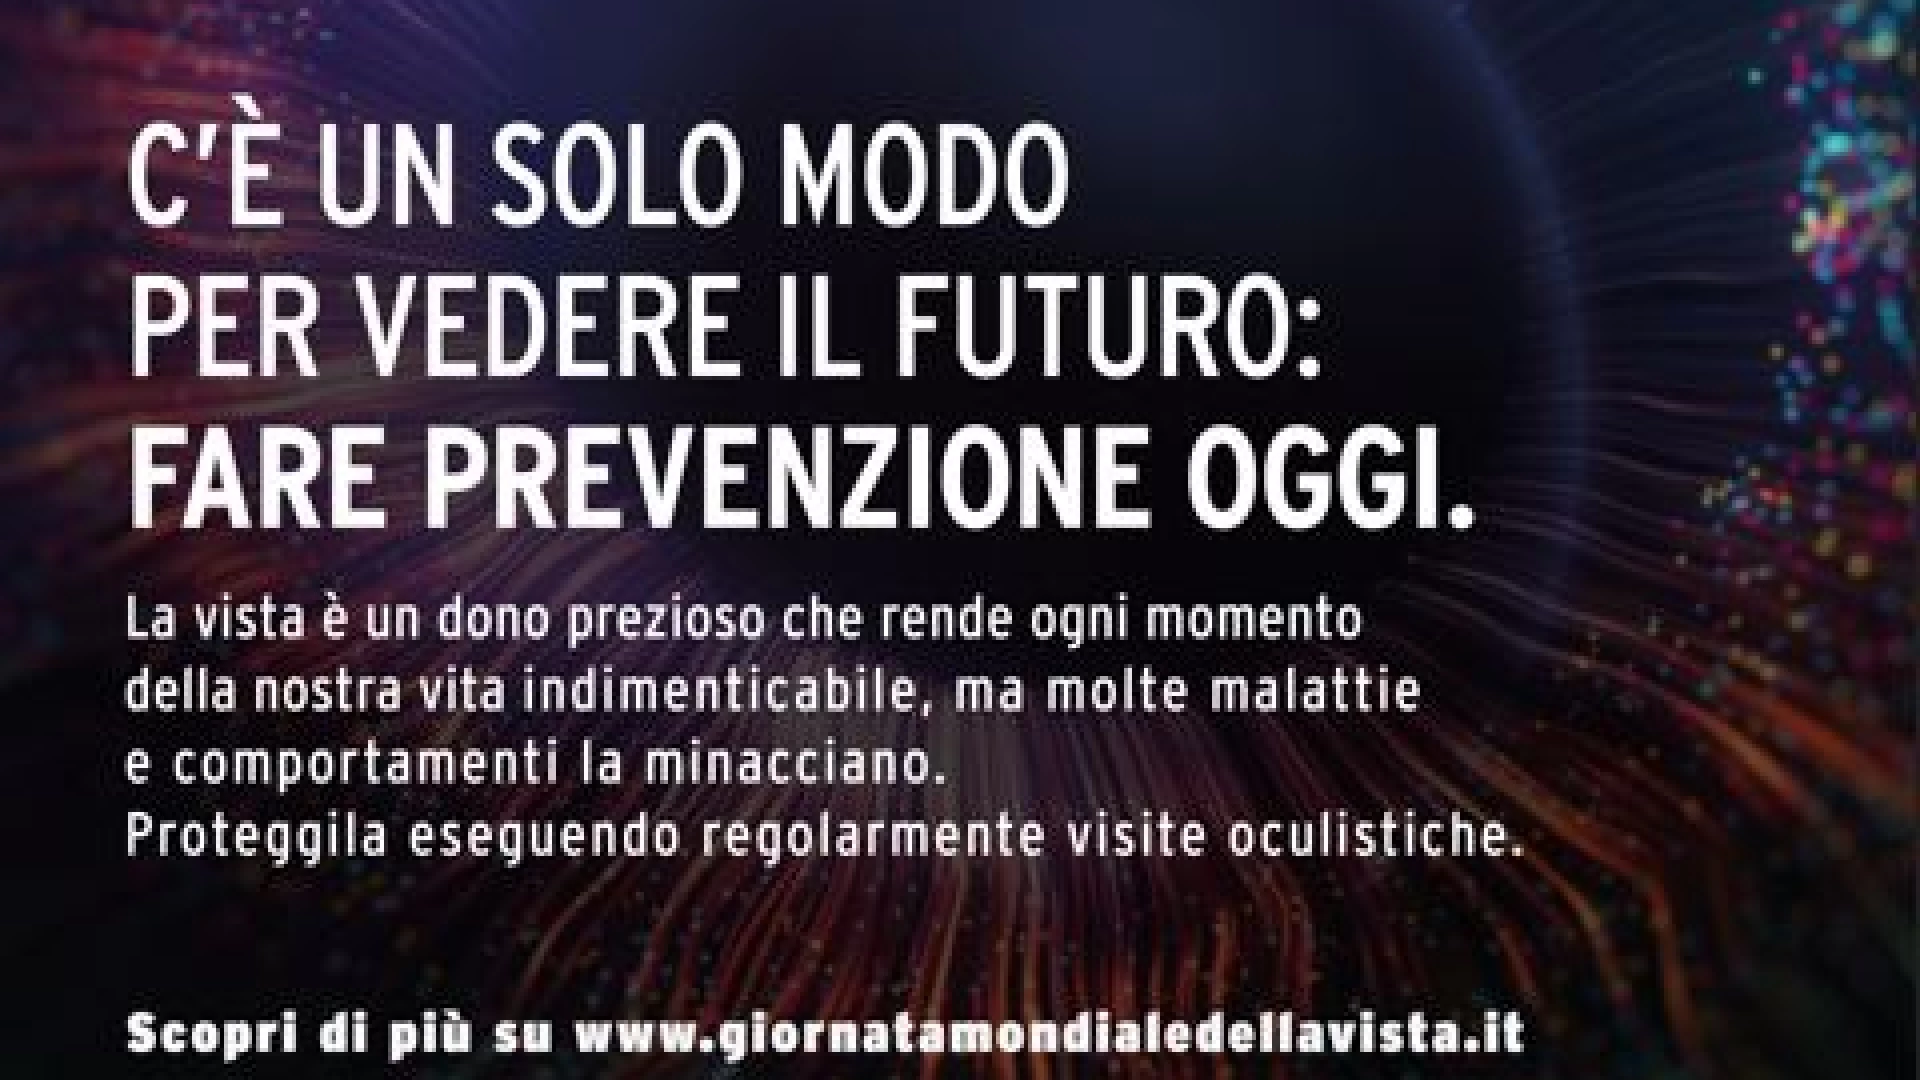 Isernia: il 15 ottobre l’Unione Italiana Ciechi promuove screening oculistici gratuiti per la cittadinanza.